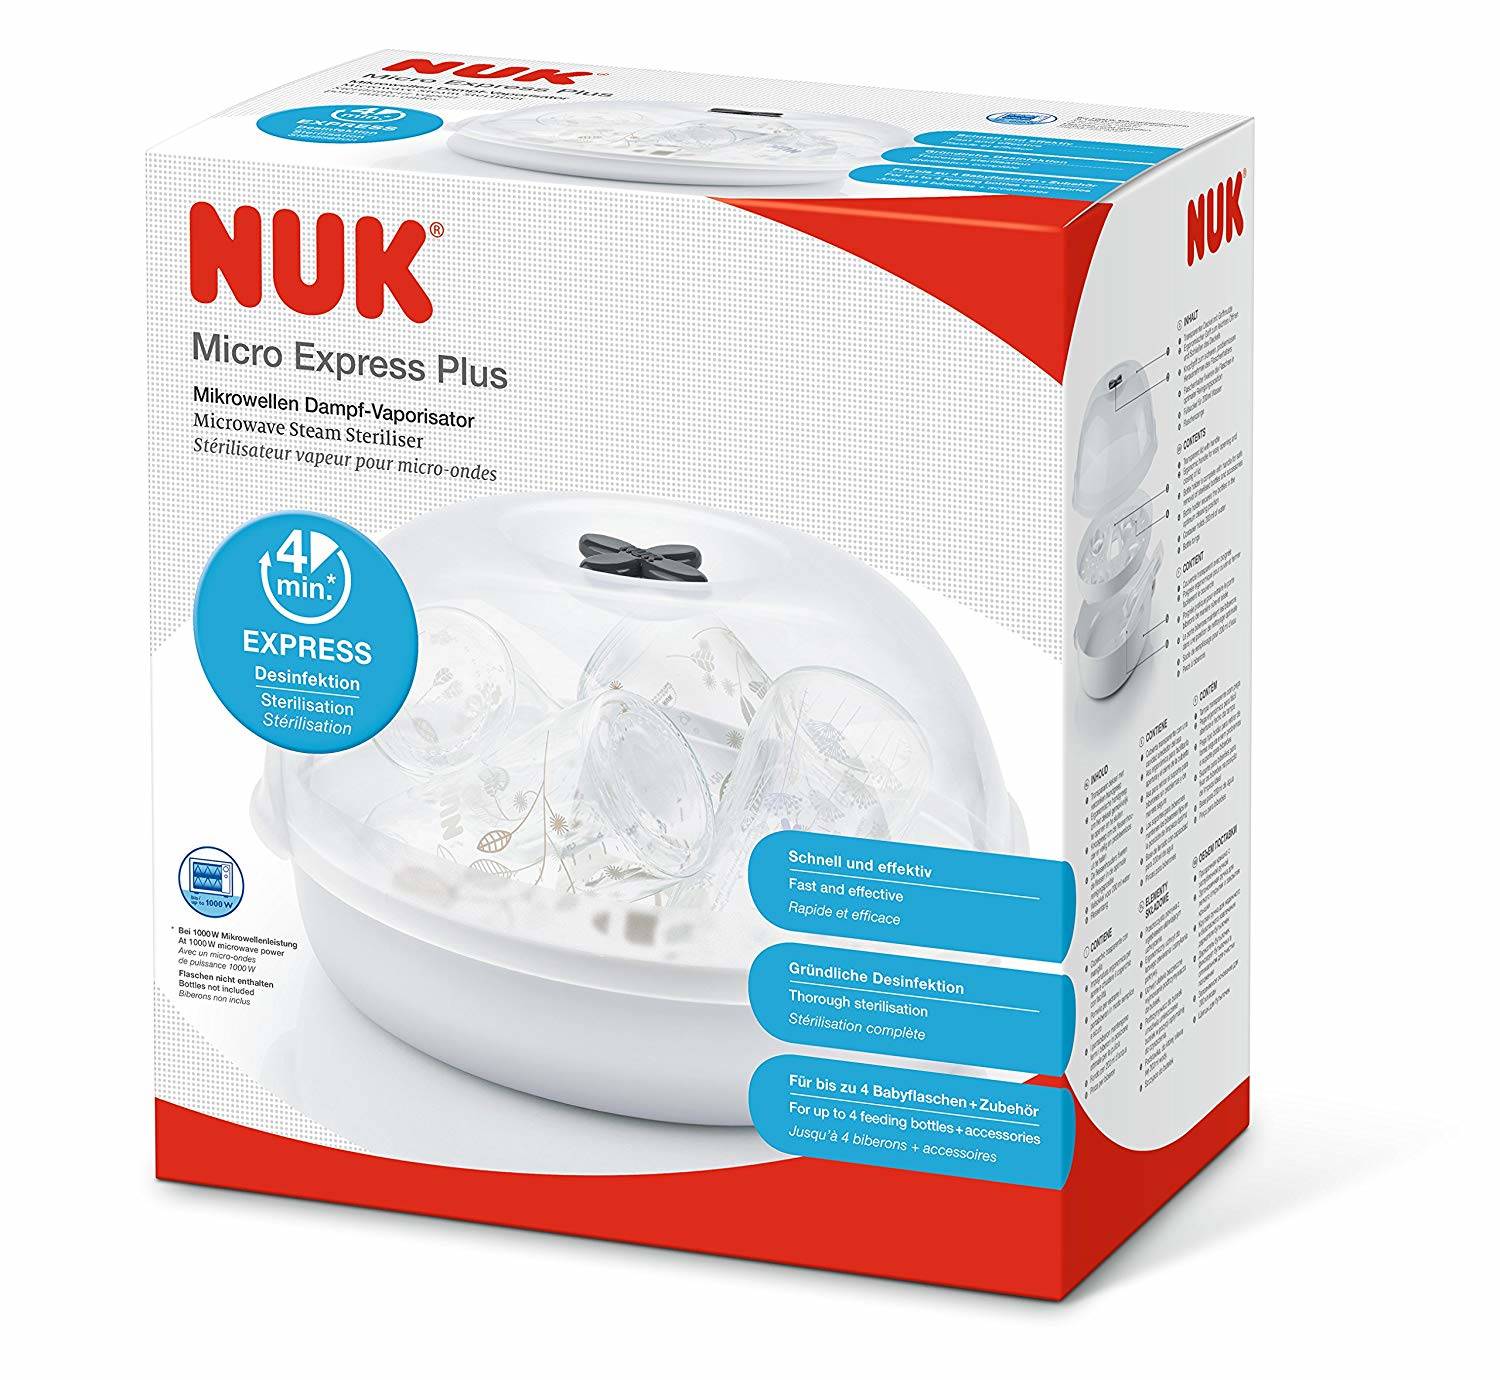 Nuk Micro Express Plus Mikrowellen Dampf-Vaporisator